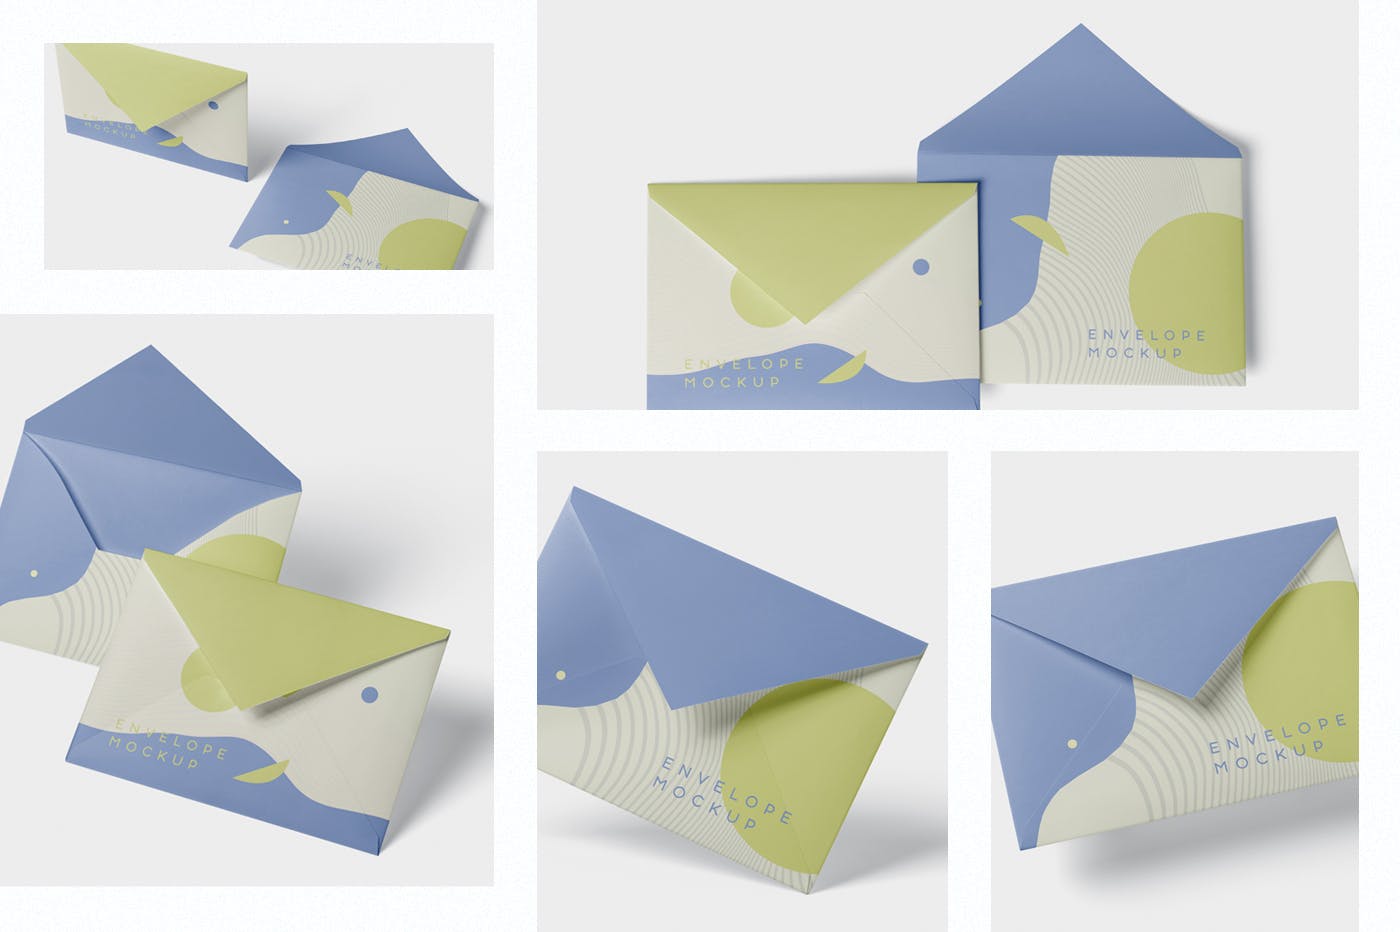 高端企业信封外观设计图素材库精选模板 Envelope C5 – C6 Mock-Up Set插图(1)